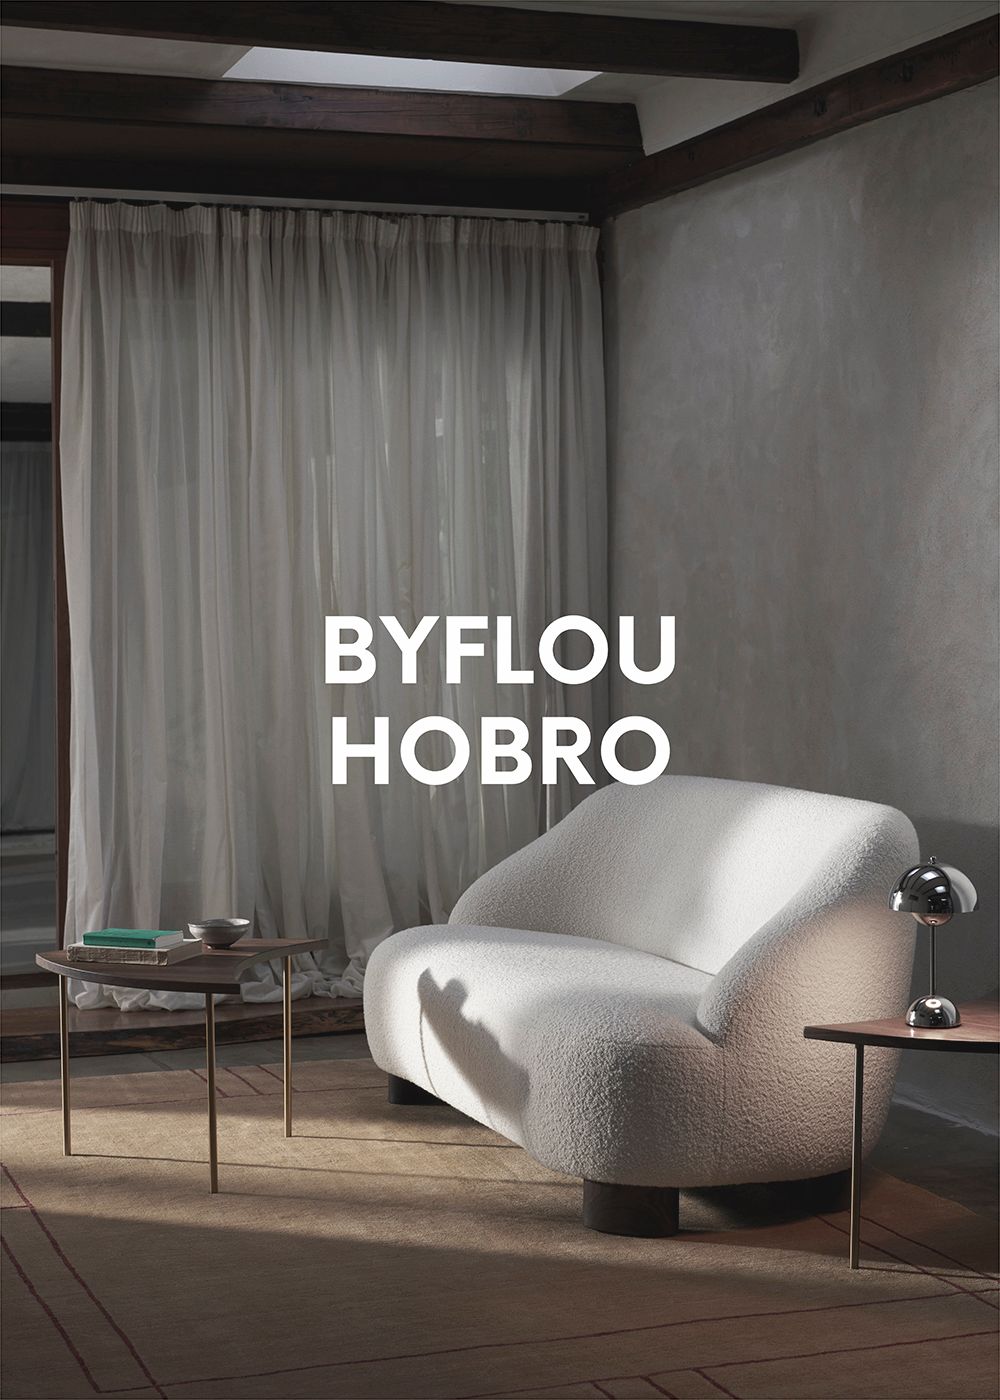 Der Byflou Showroom in Hobro, Dänemark